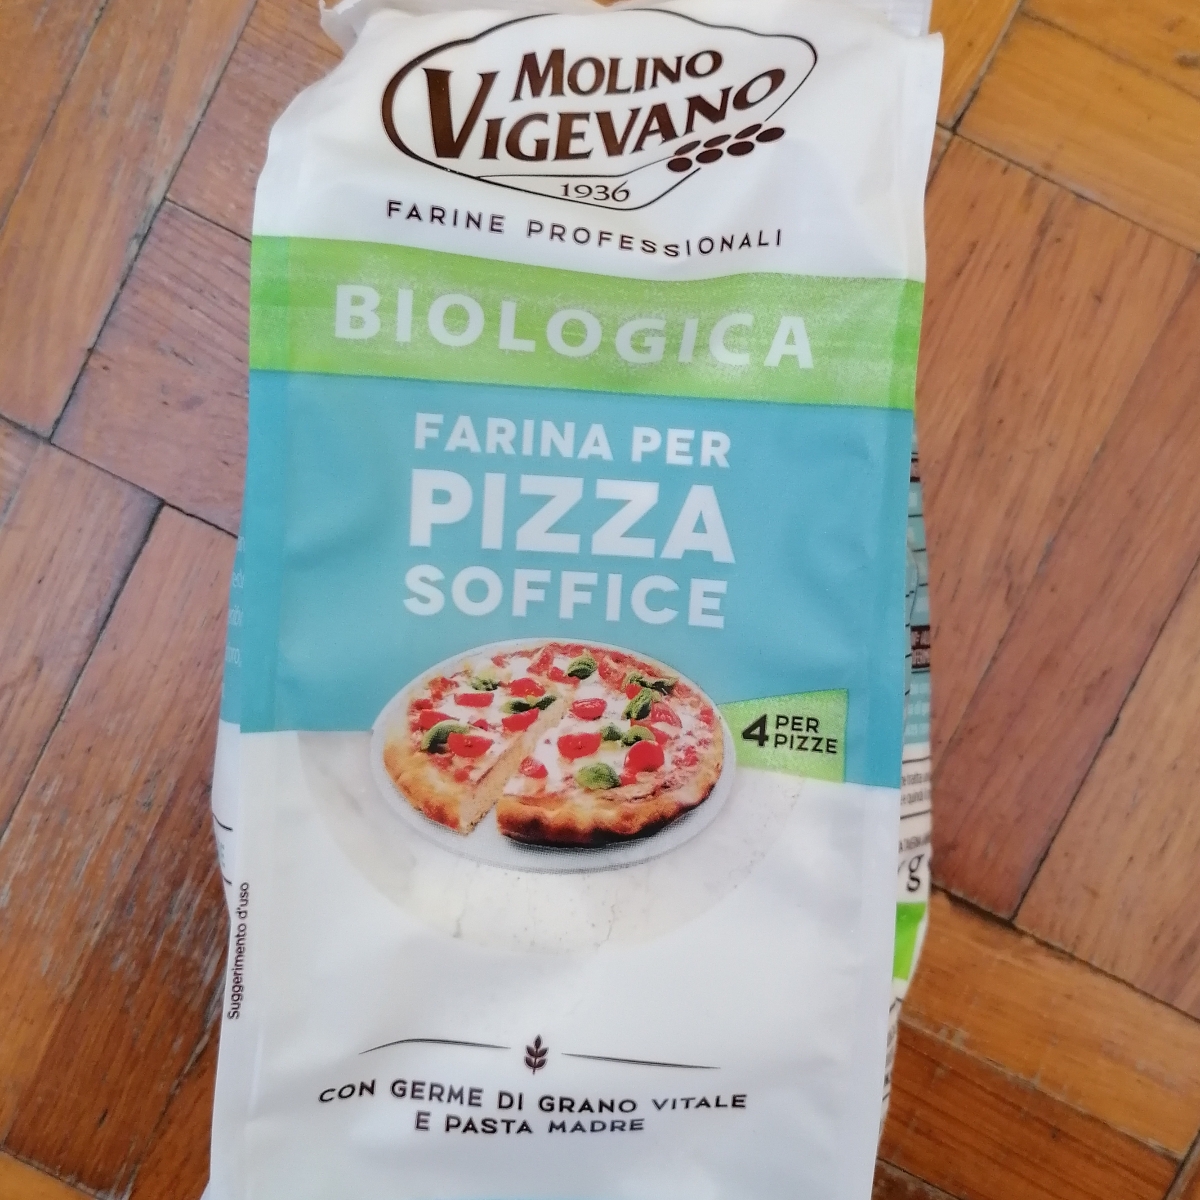 Molino Vigevano 1936 Preparato pizza Review